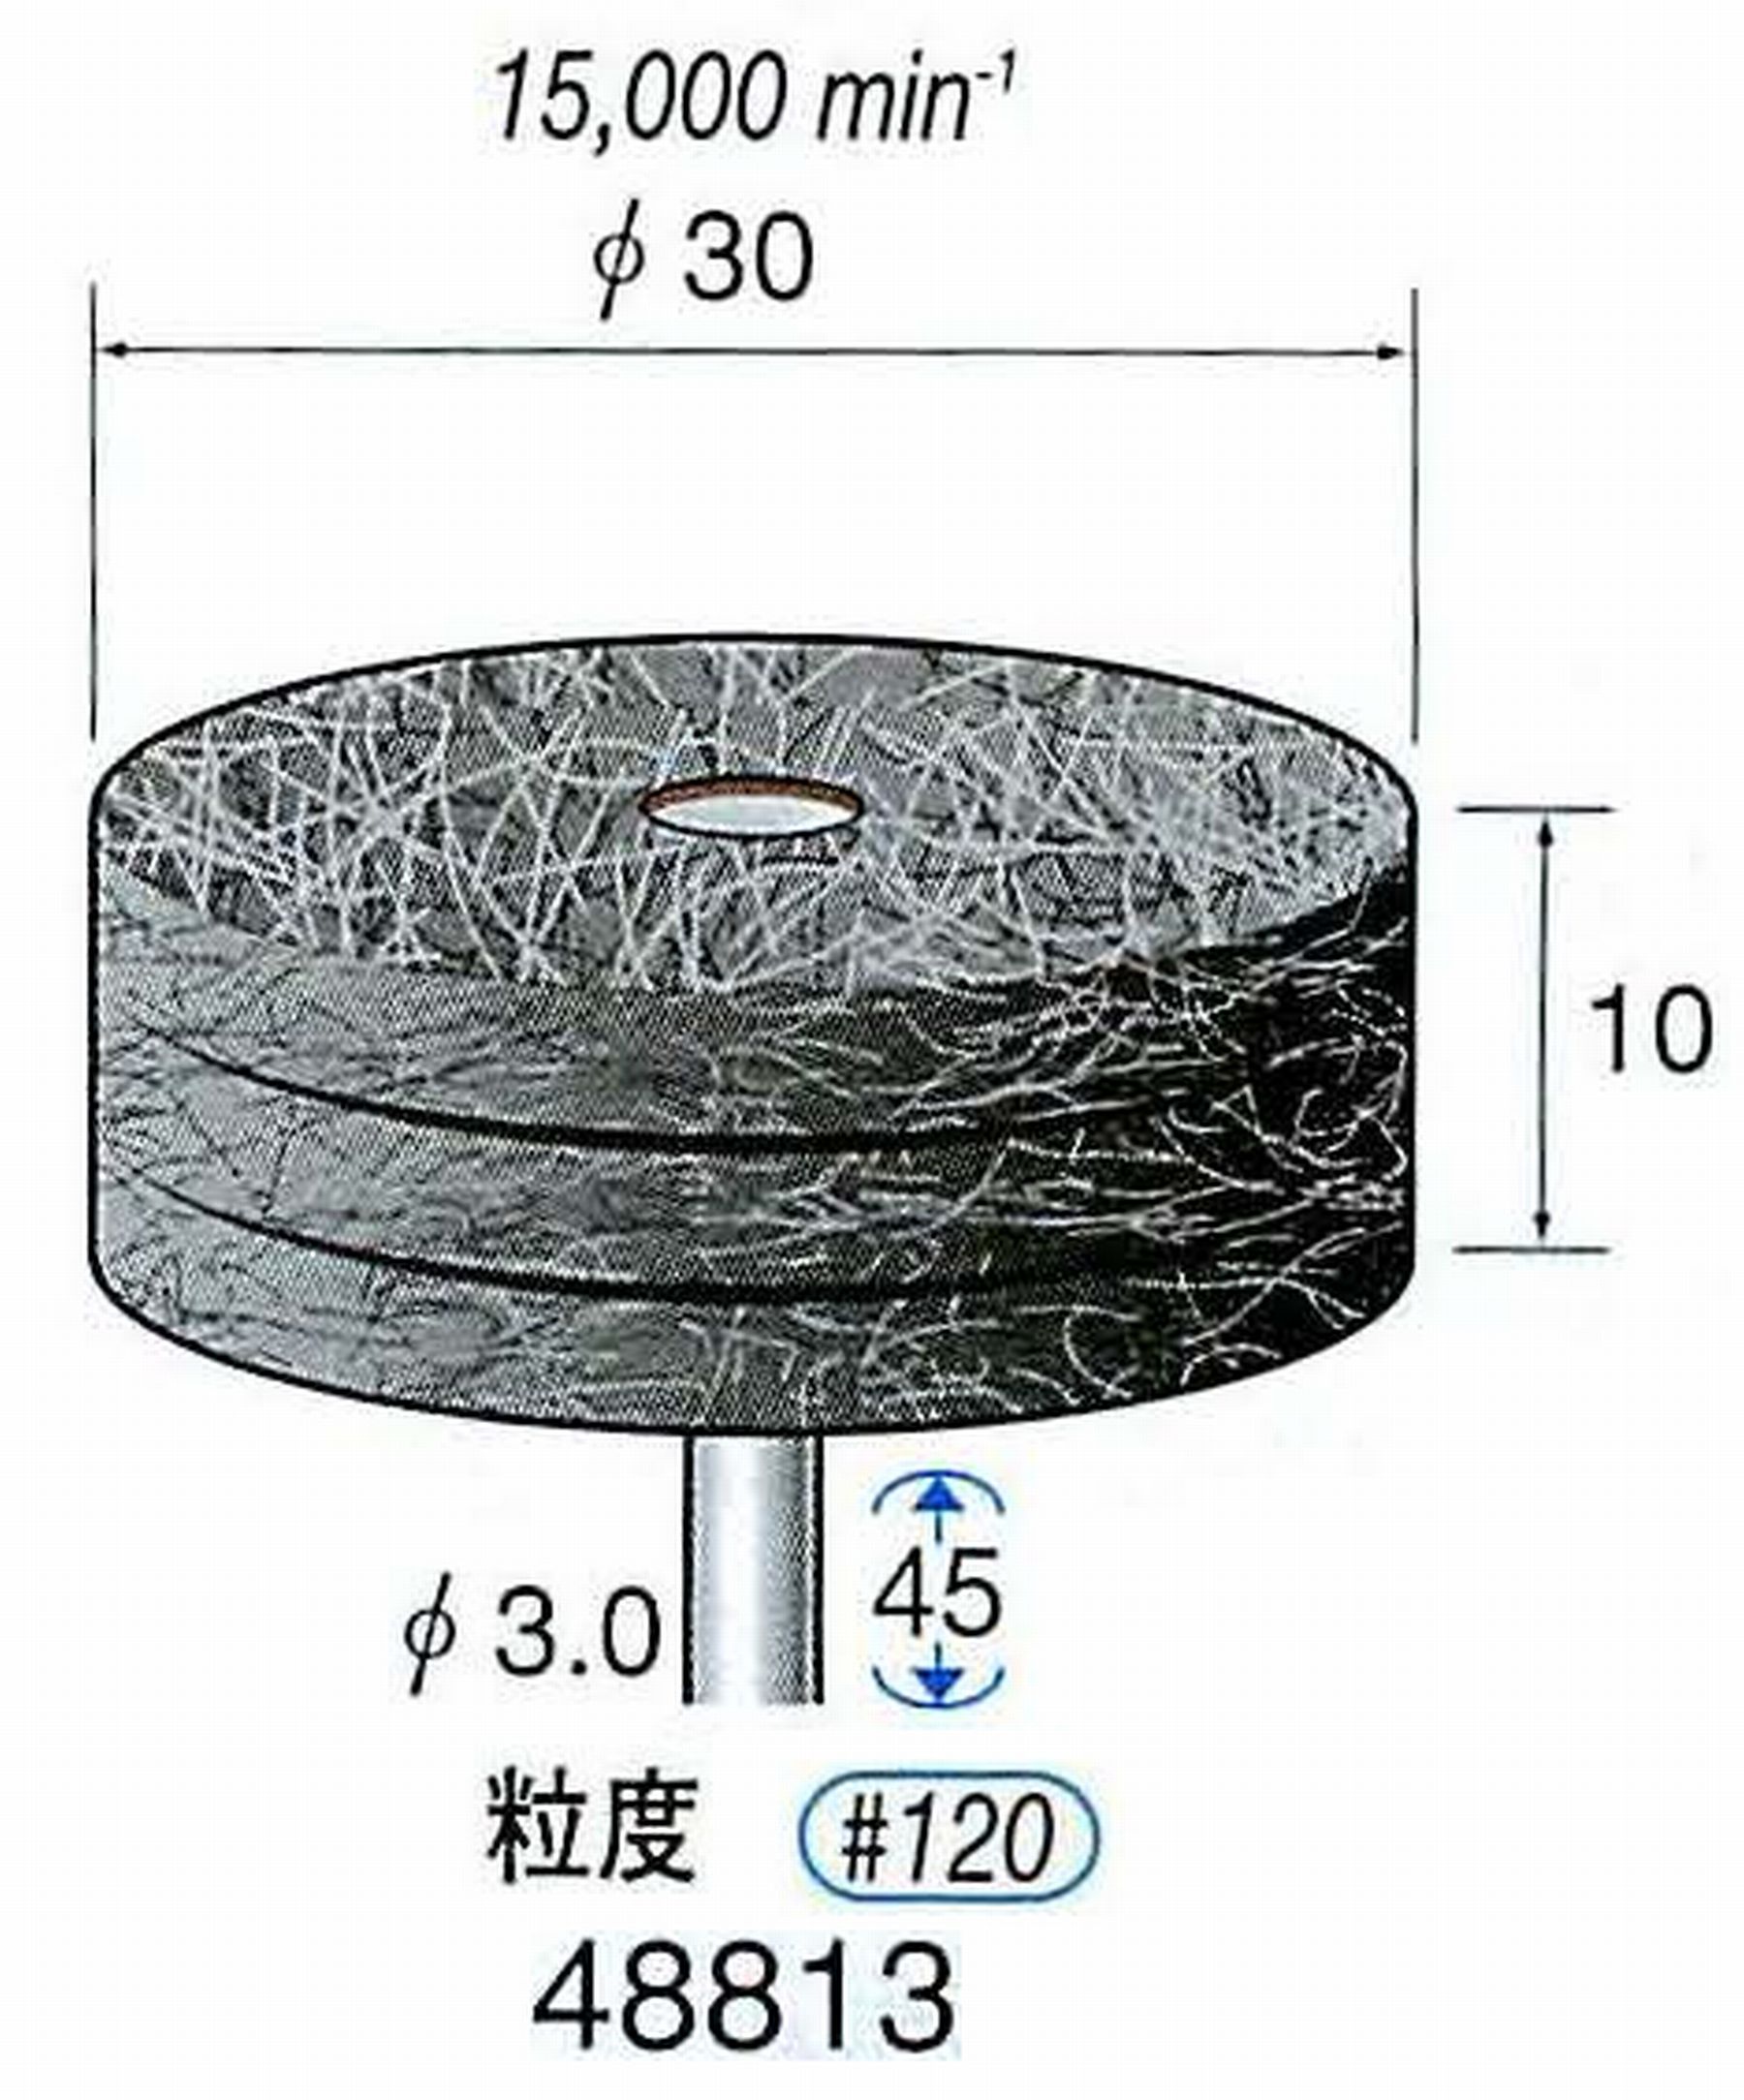 ナカニシ/NAKANISHI スポンジサンダー(研磨砥粒入り) 軸径(シャンク)φ3.0mm 48813